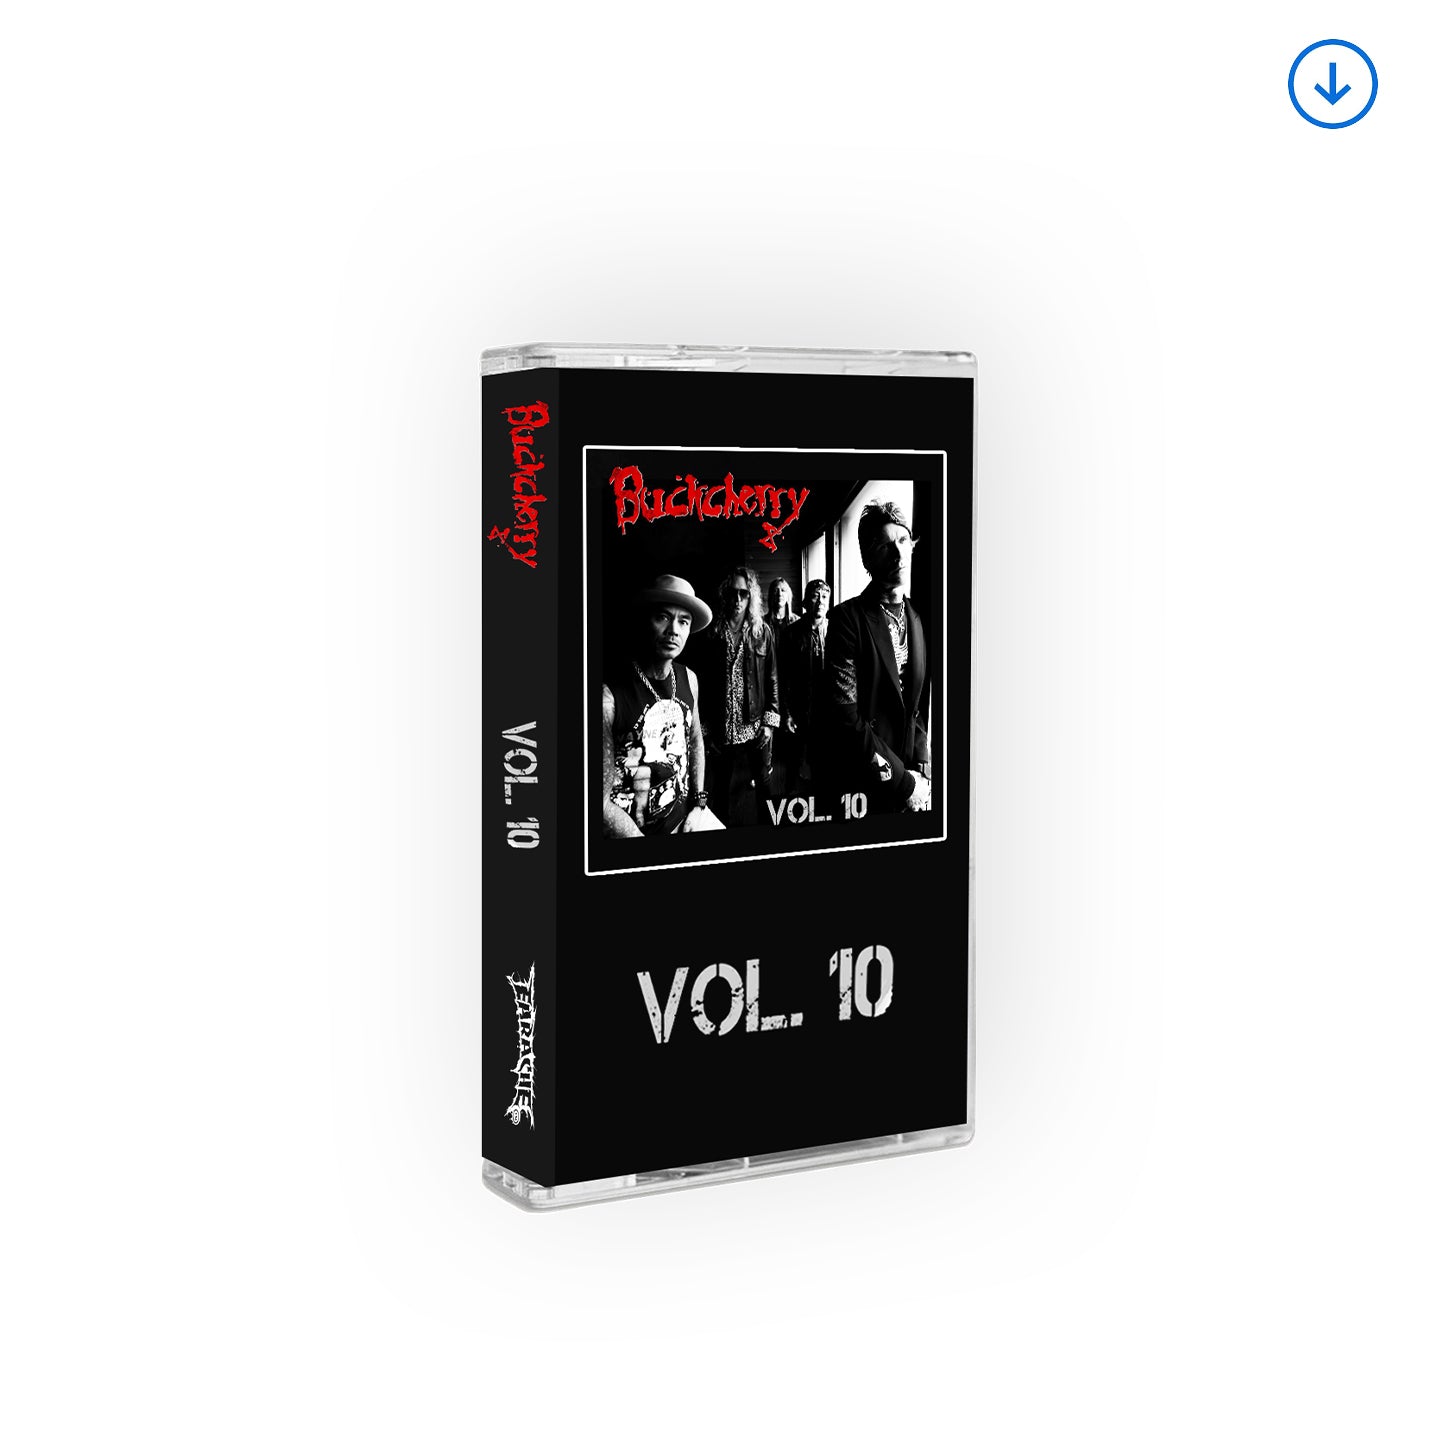 Buckcherry "Vol. 10" Cassette Tape